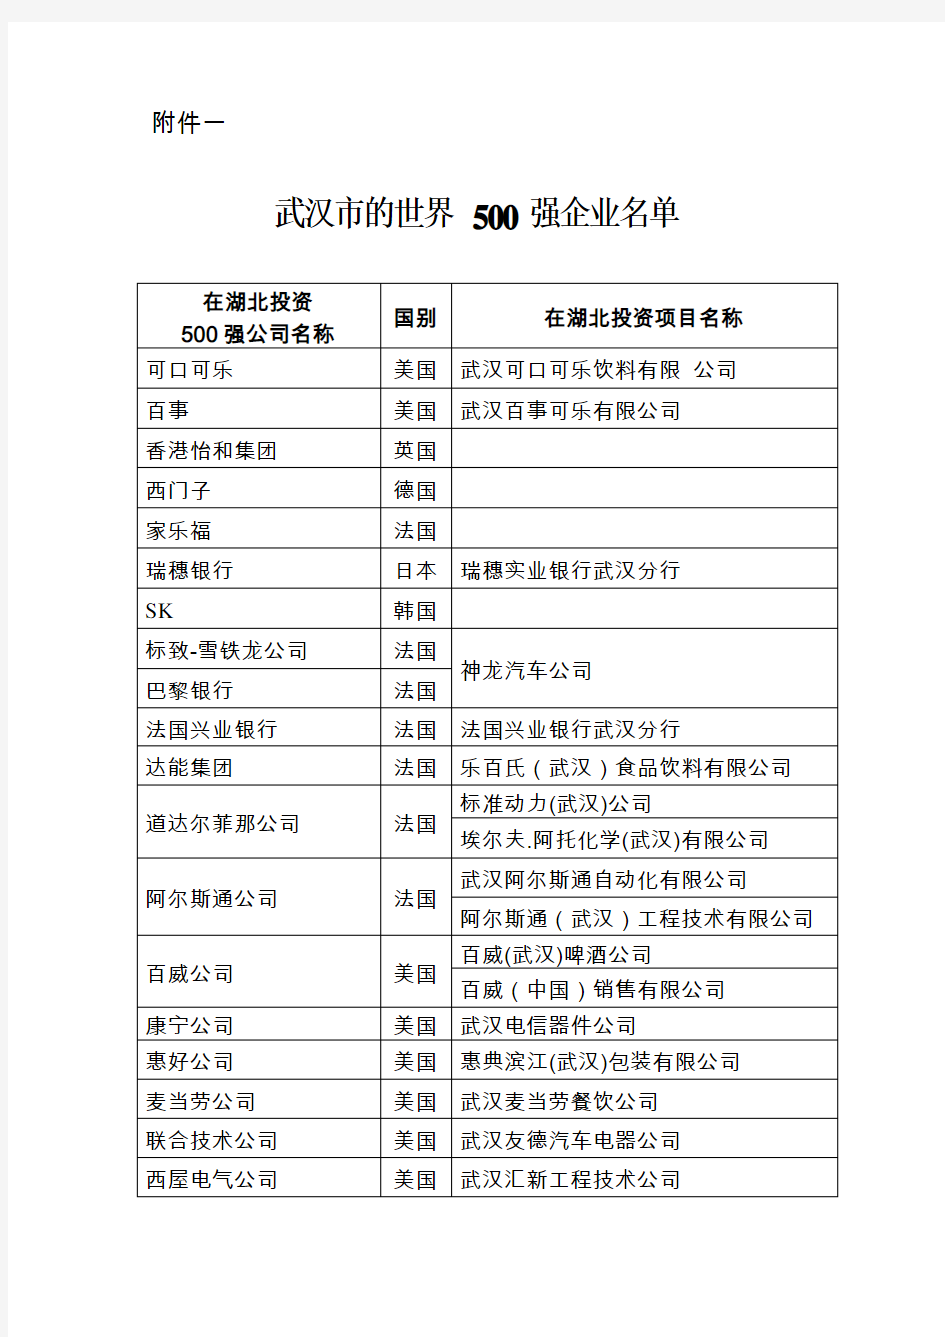 武汉地区世界500强企业名单